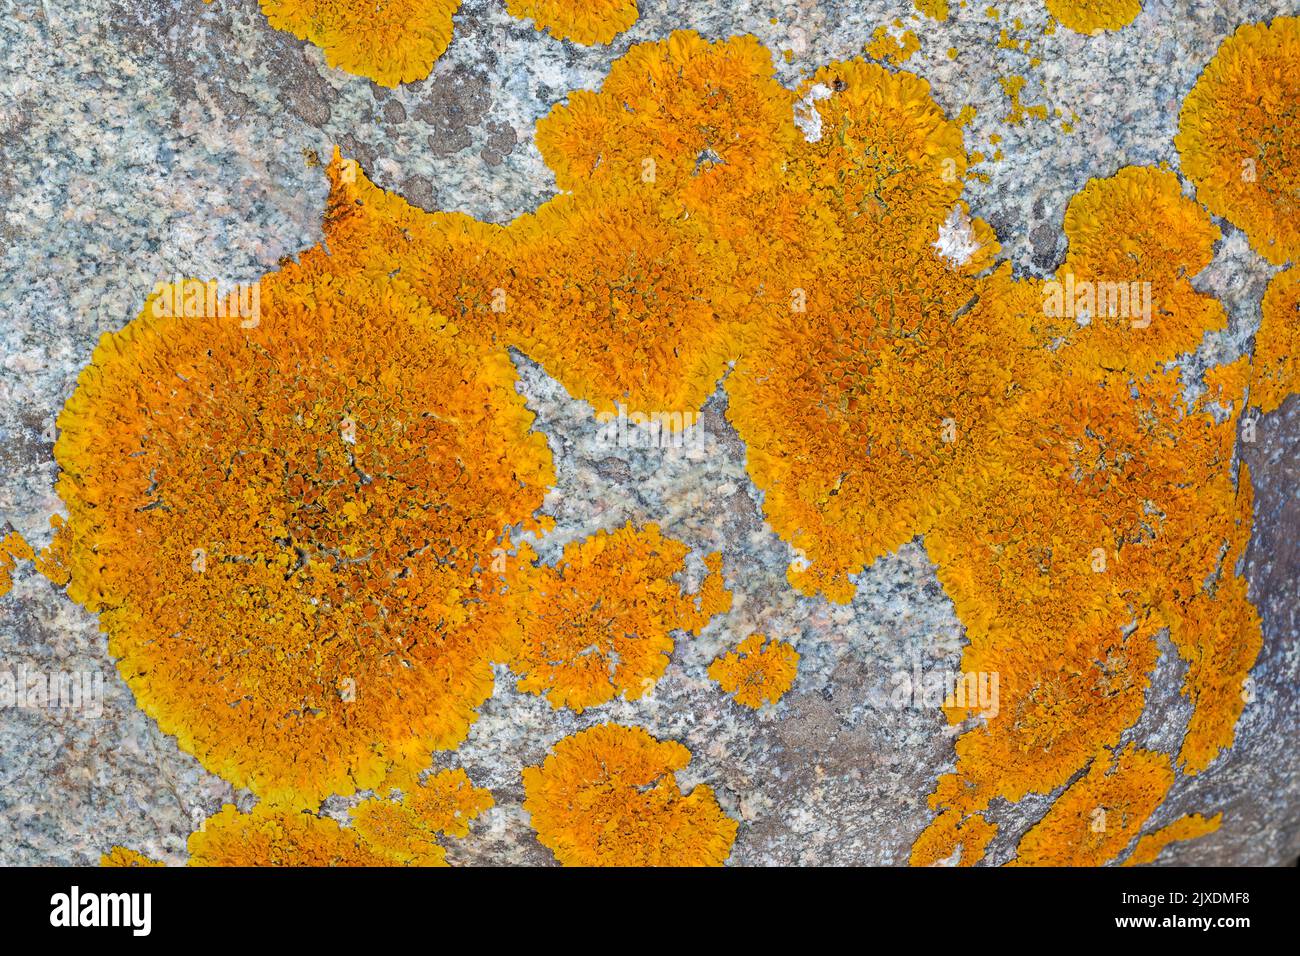 Le Lichen orange commun se trouve souvent sur les rochers de la côte nord et de la mer Baltique. Danemark Banque D'Images